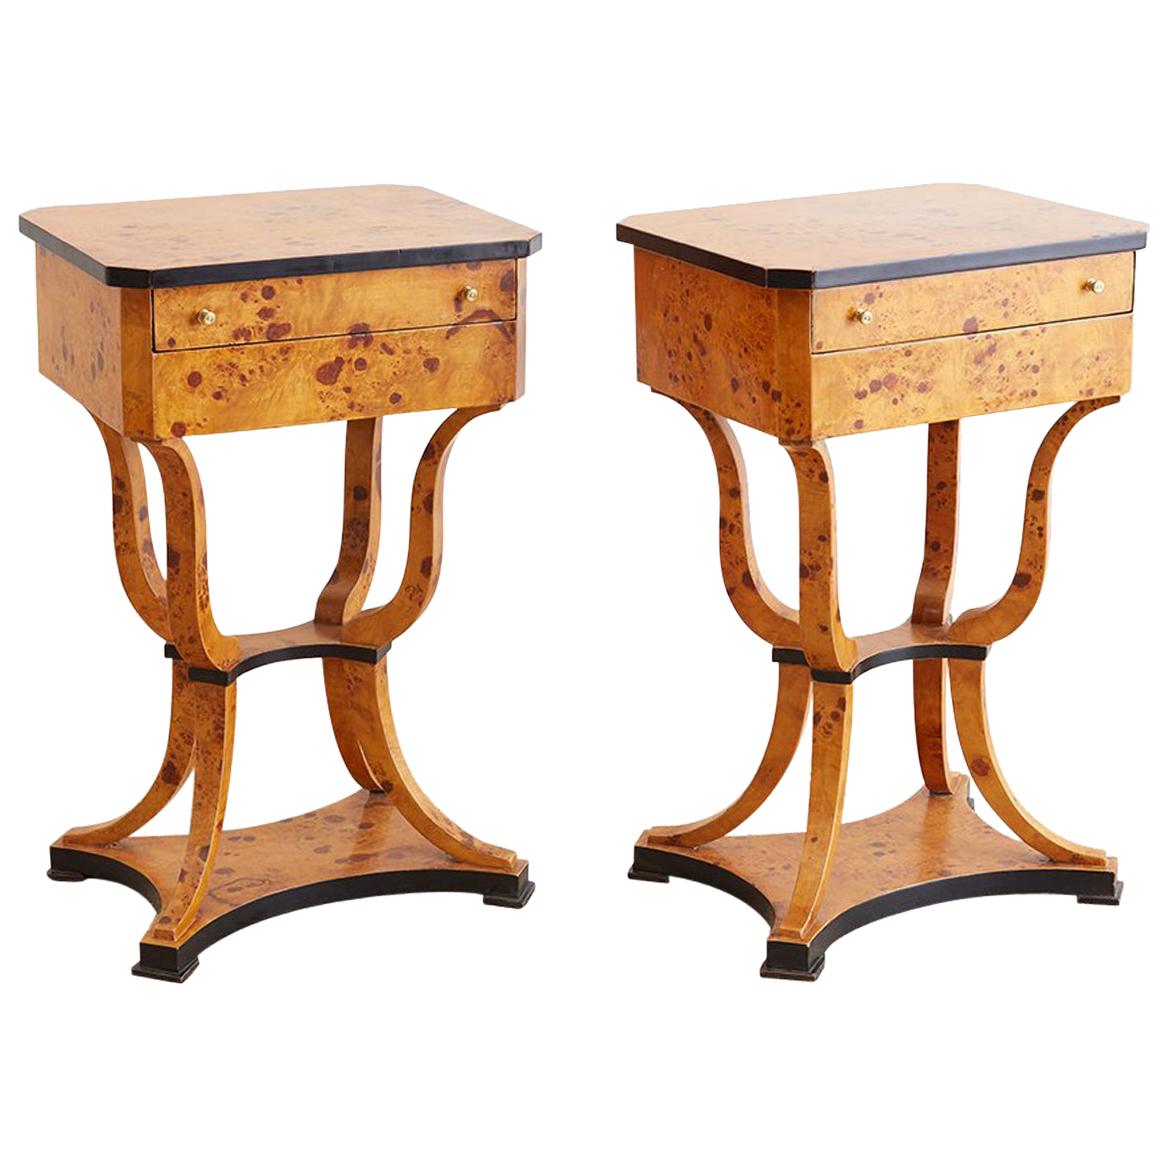 Pair of Swedish Biedermeier Style Sewing Table or Nightstands